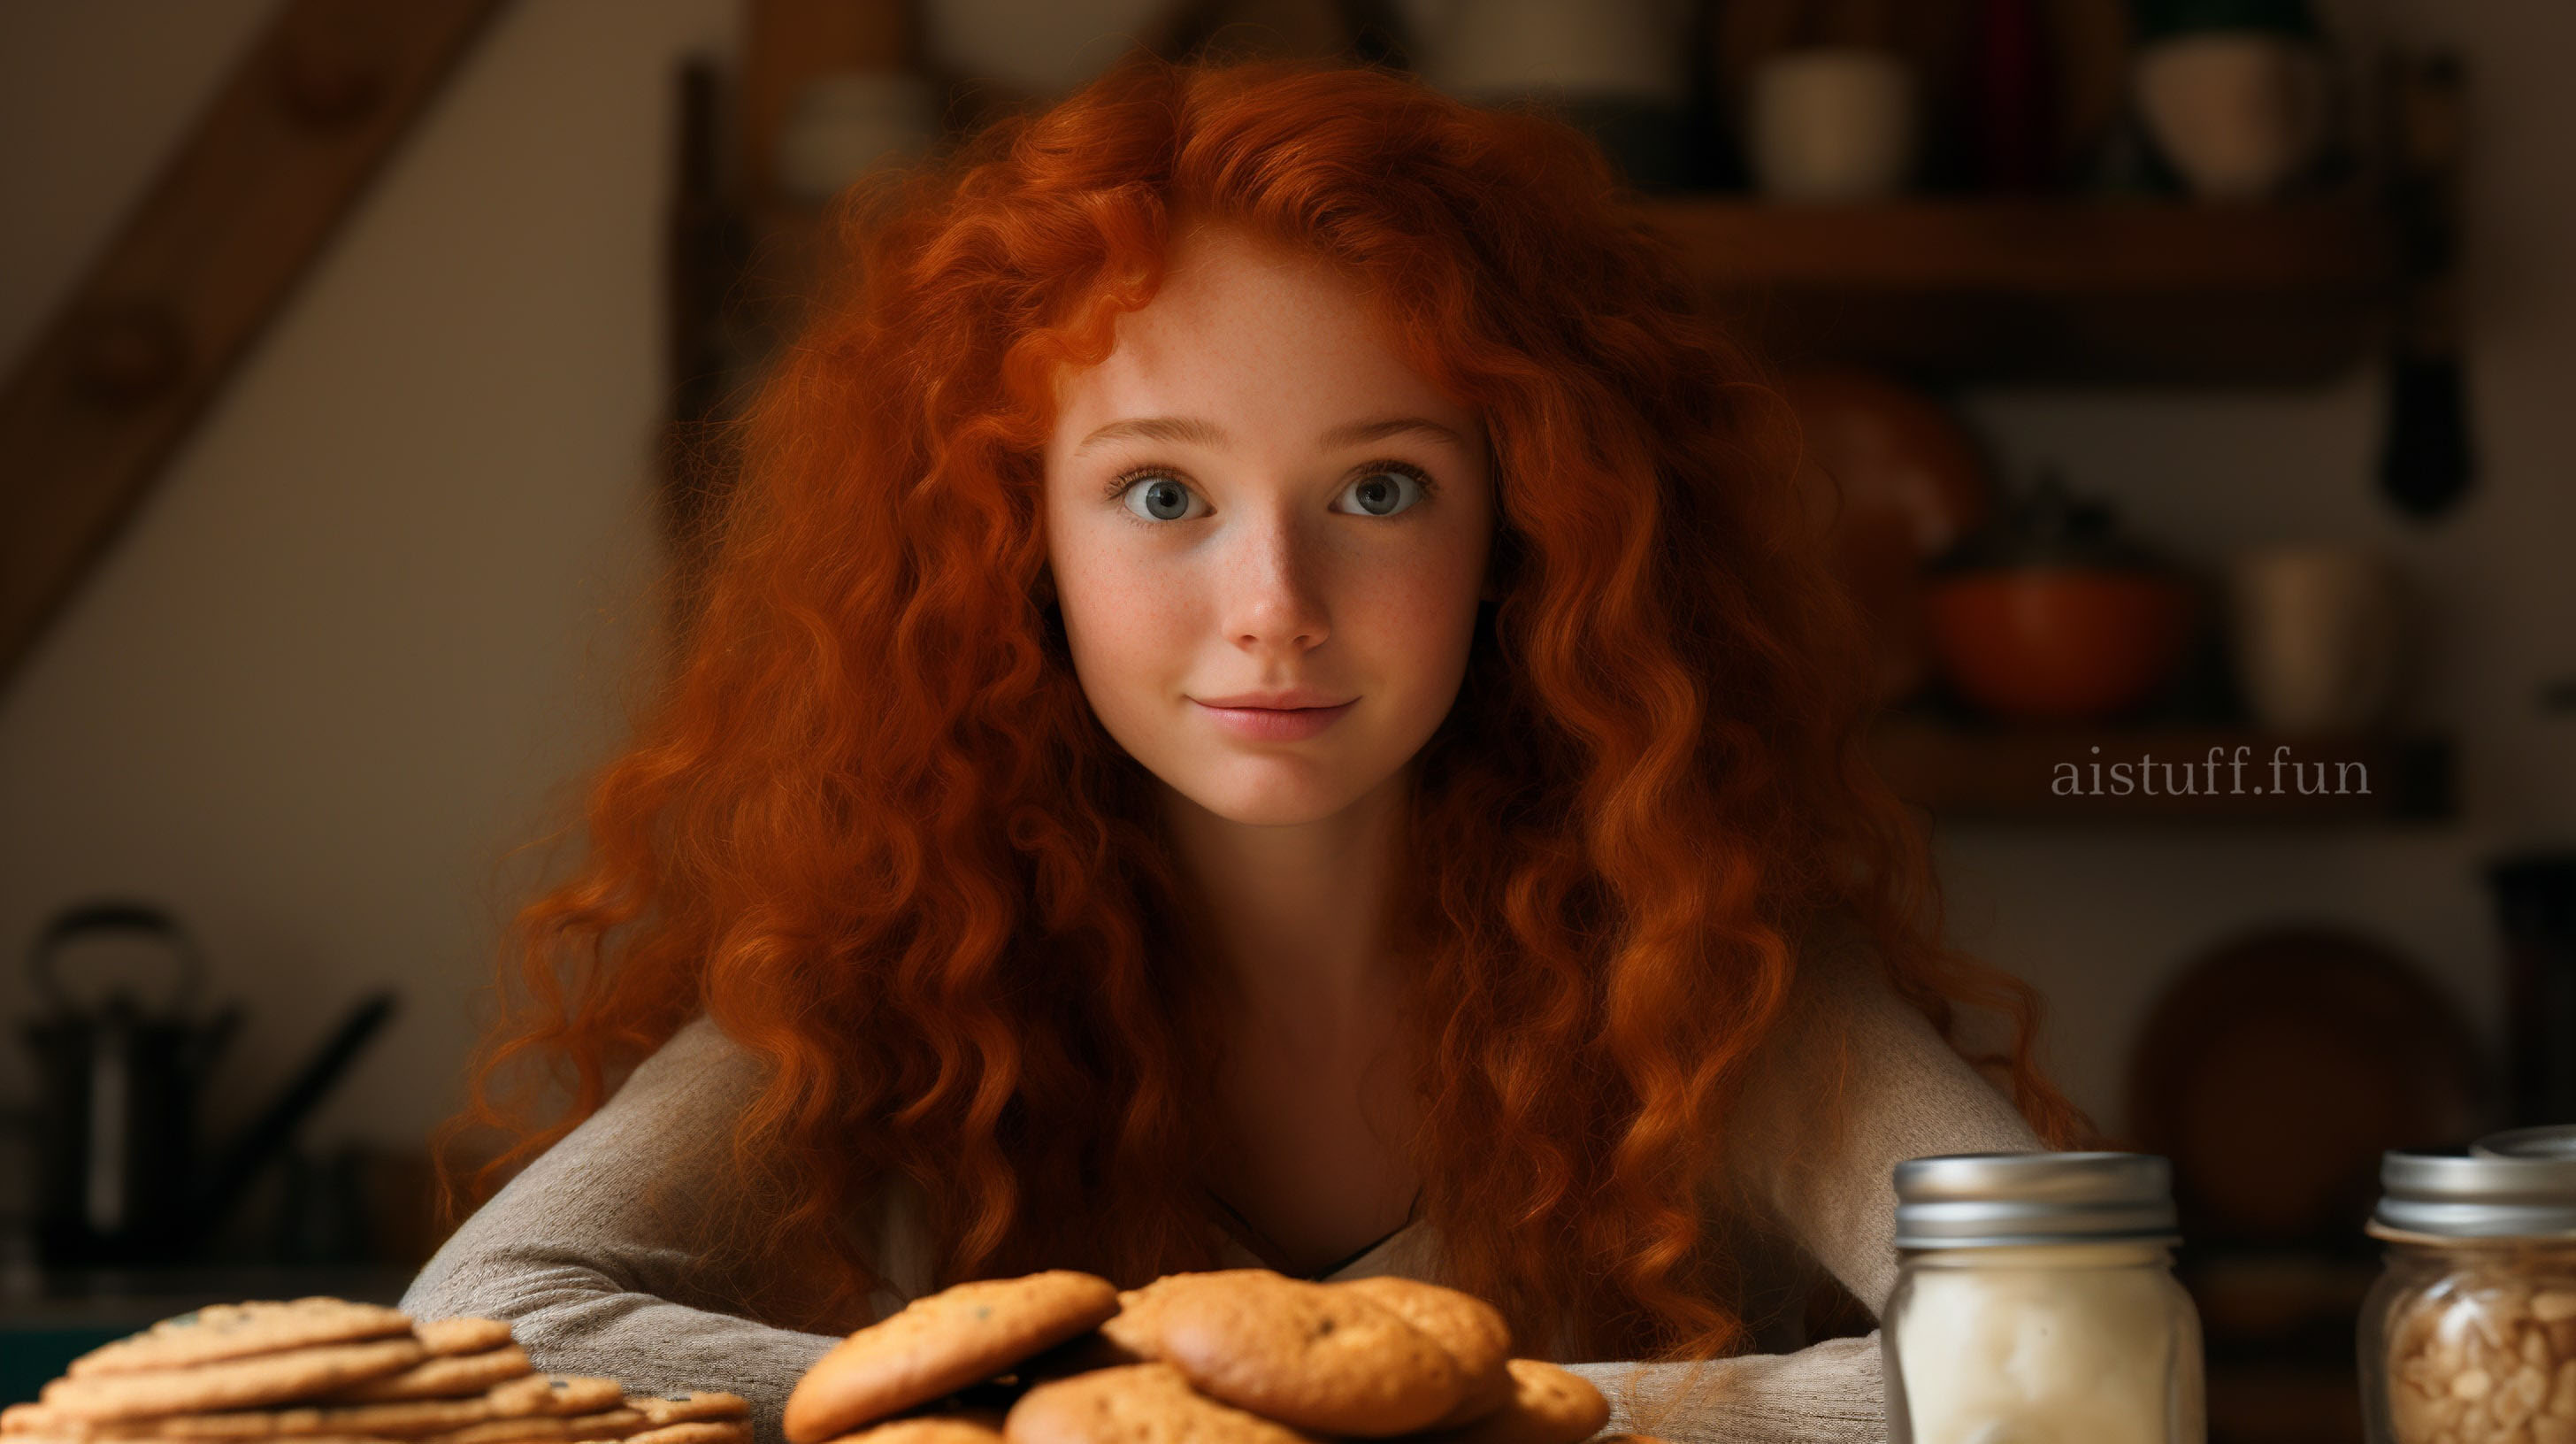 Рыжая девочка с легкой улыбкой сидит за кухонным столом